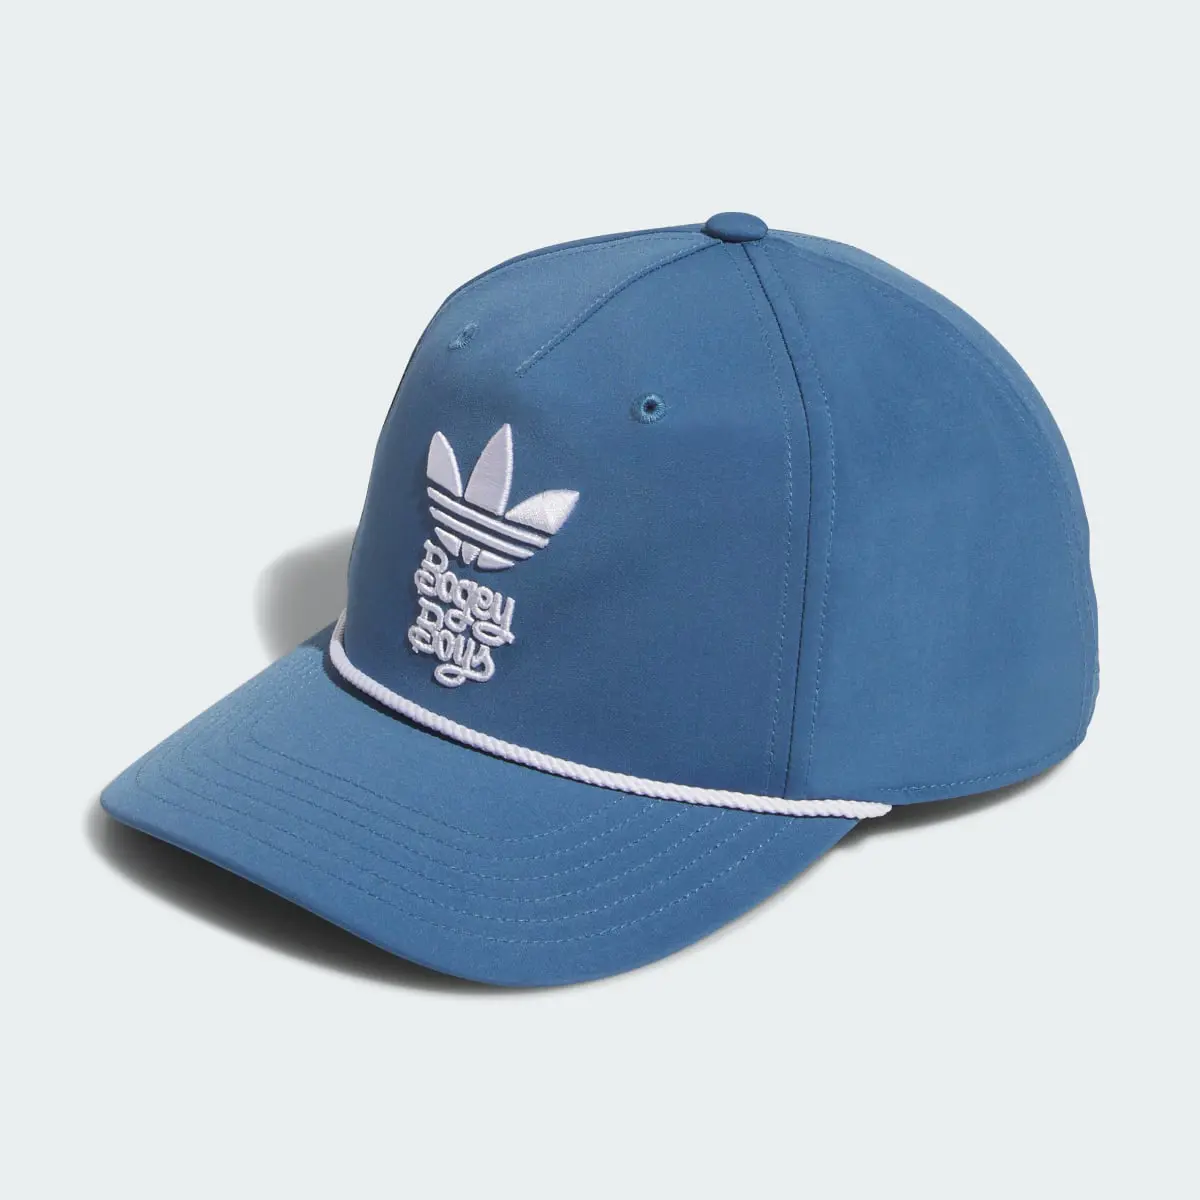 Adidas x Bogey Boys Golf Hat. 2